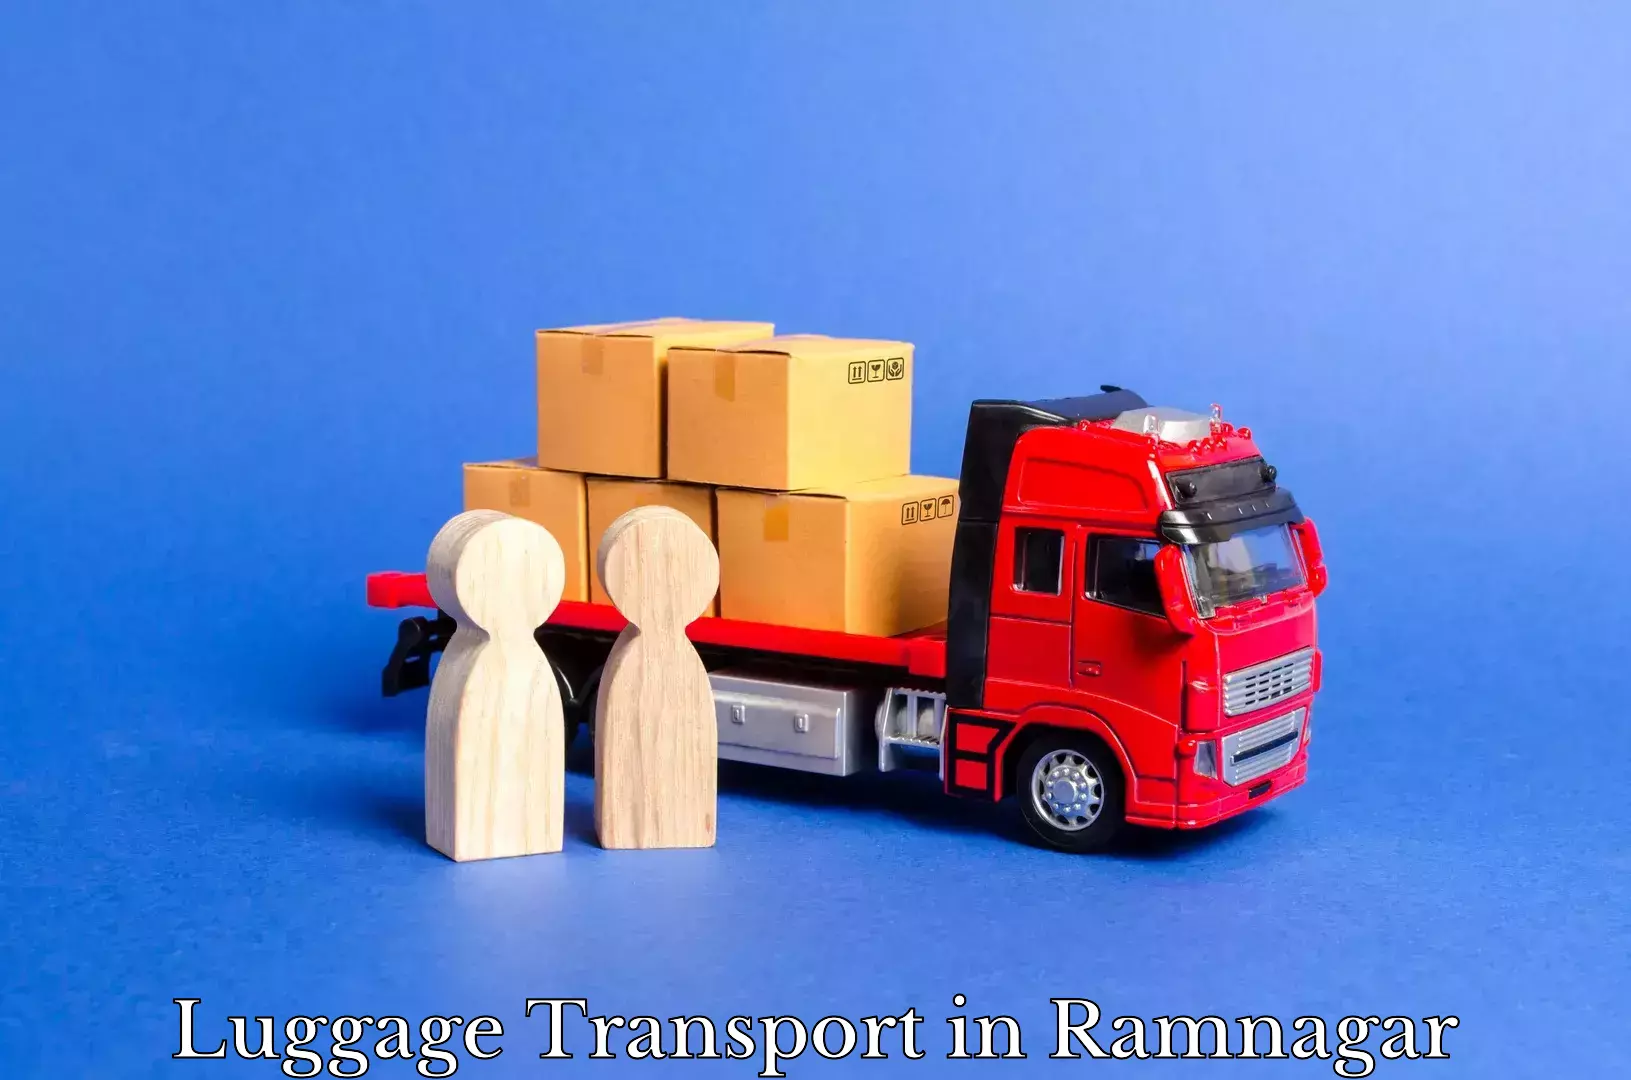 Luggage transit service in Ramnagar